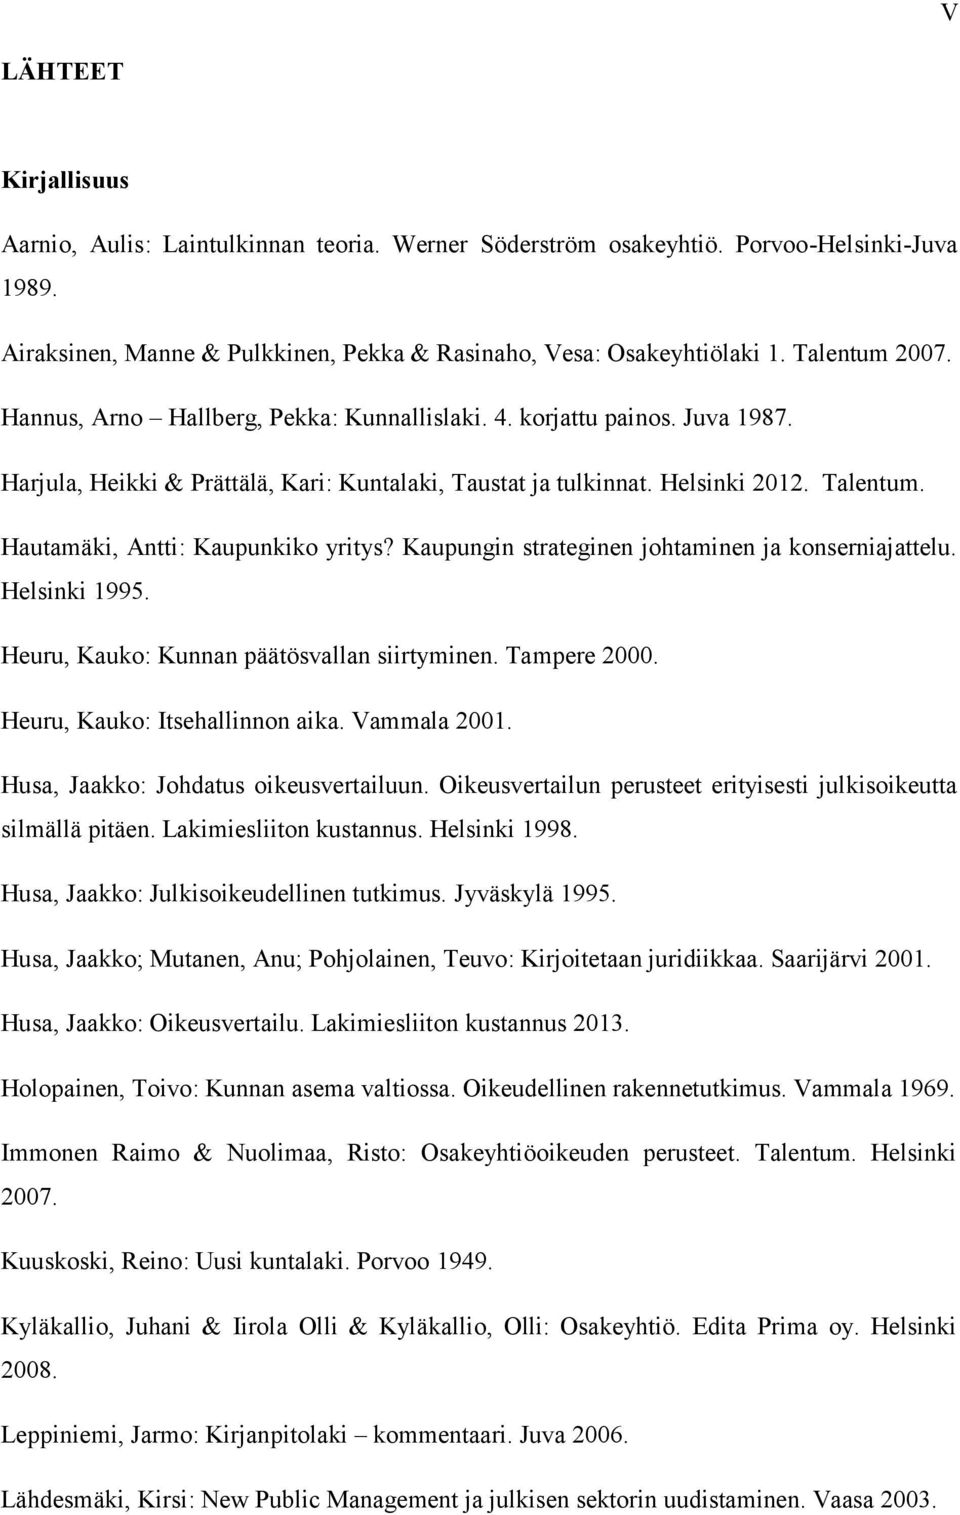 Hautamäki, Antti: Kaupunkiko yritys? Kaupungin strateginen johtaminen ja konserniajattelu. Helsinki 1995. Heuru, Kauko: Kunnan päätösvallan siirtyminen. Tampere 2000. Heuru, Kauko: Itsehallinnon aika.